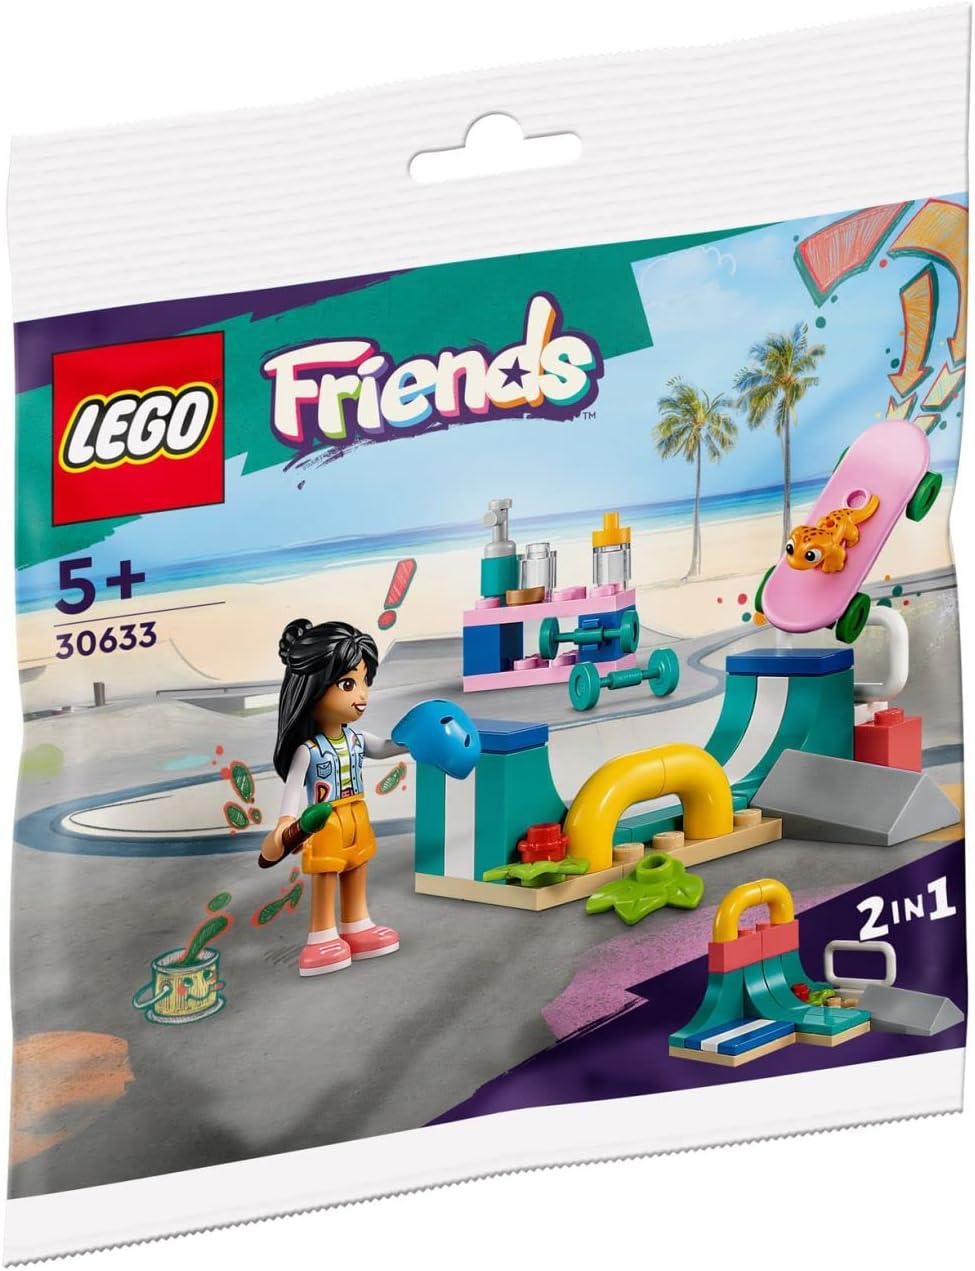 La rampe de skate LEGO Friends 30633